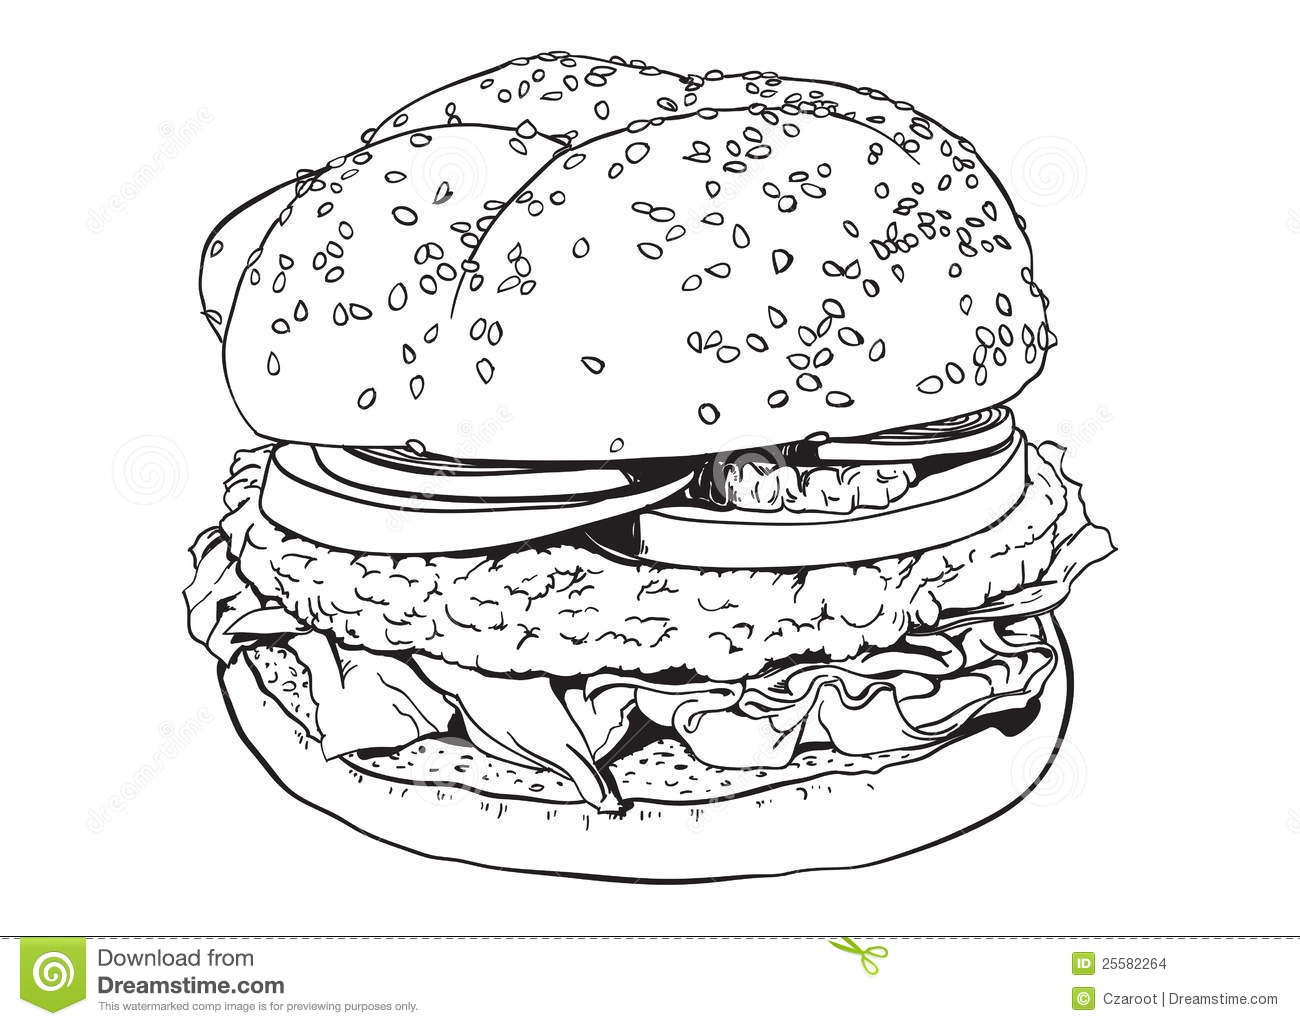 Еда. Бургеры. Раскраски с изображением еды. Раскраски для детей с изображениями аппетитных бургеров. Раскраски на тему еды.